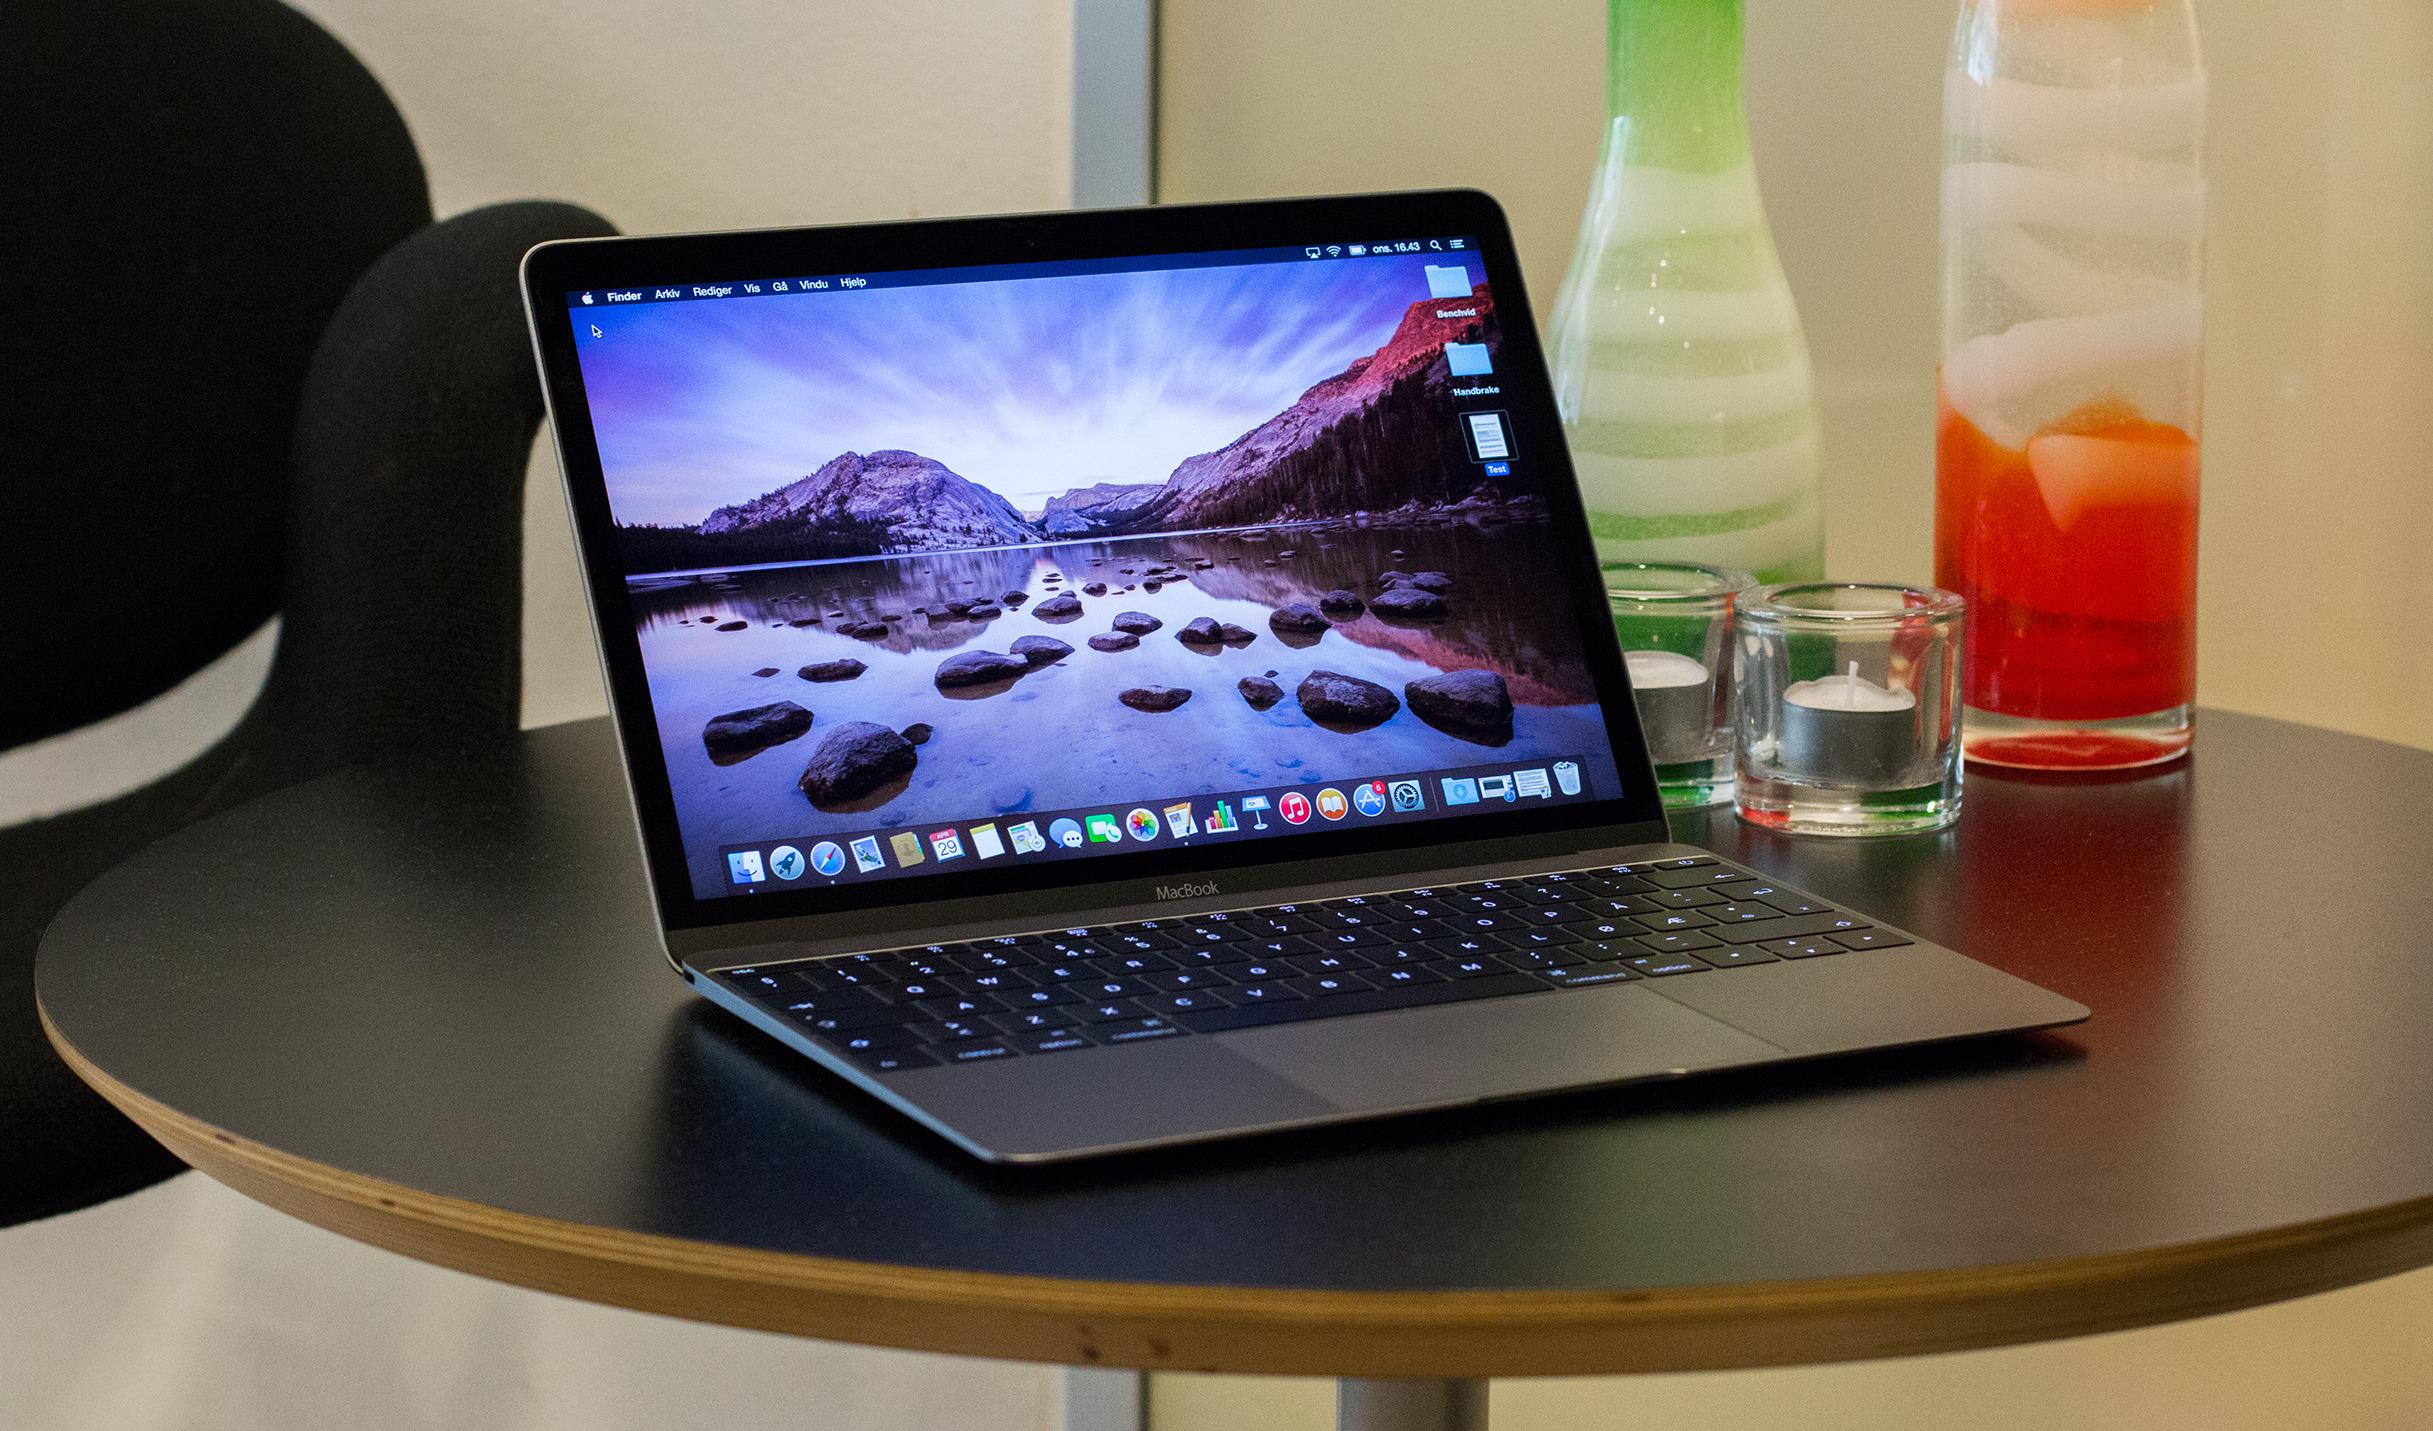 Apple er tradisjonelt ganske konservative i sine teknologivalg. Men siste MacBook ut er et eksempel på det motsatte. Den har kun én tilkobling, og den er av den helt nye USB type C-standarden. Foto: Anders Brattensborg Smedsrud, Tek.no